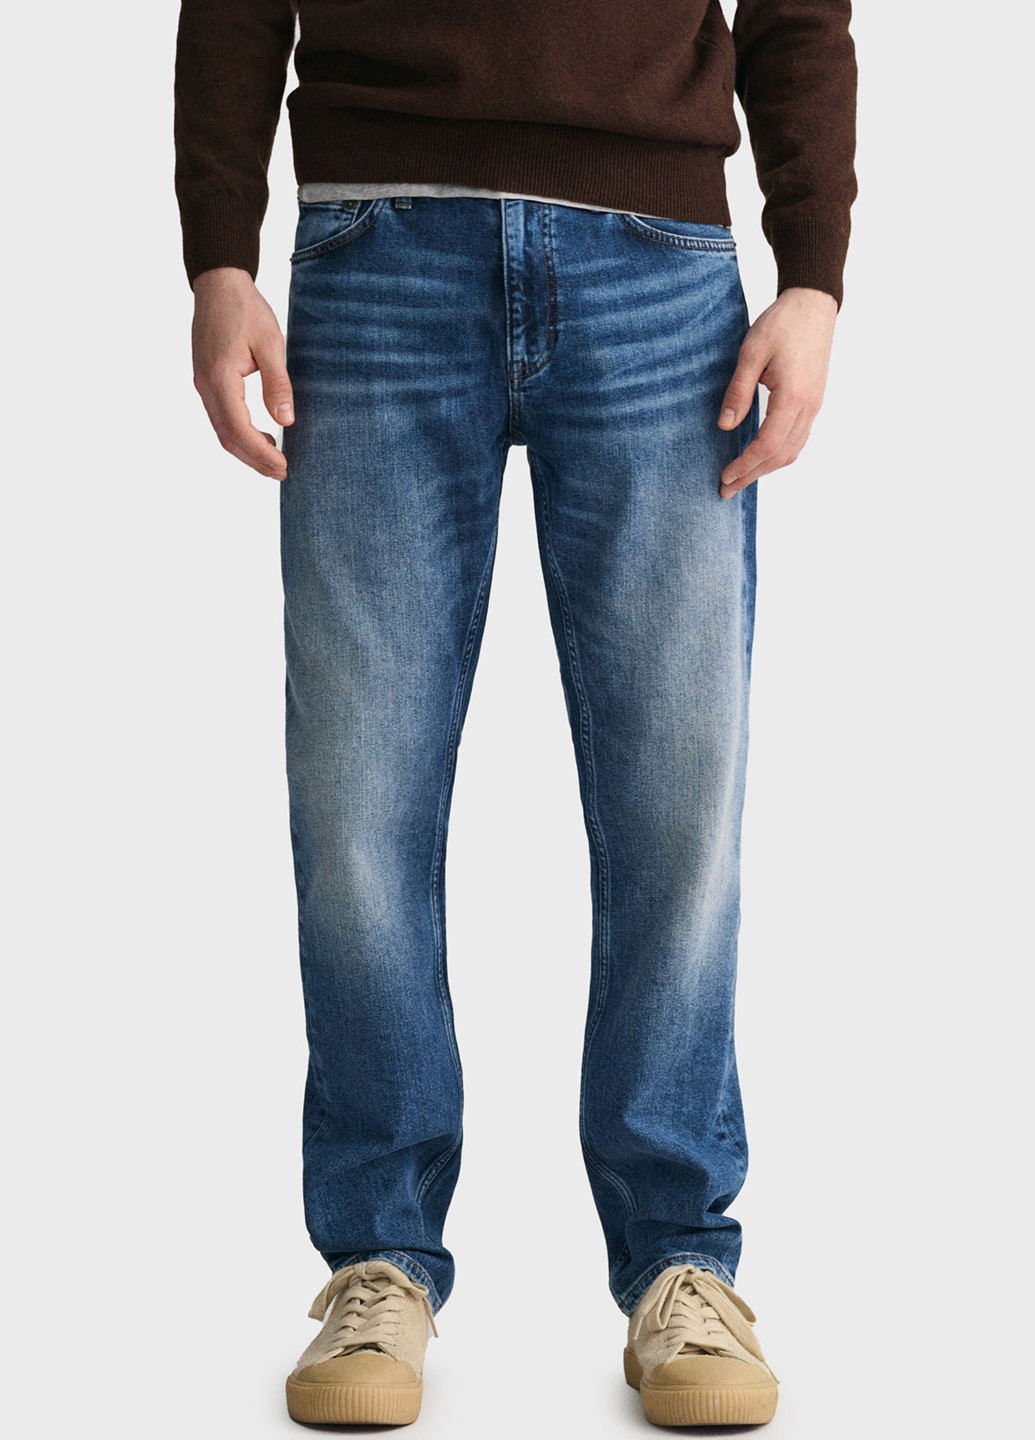 Синие демисезонные прямые джинсы Gant